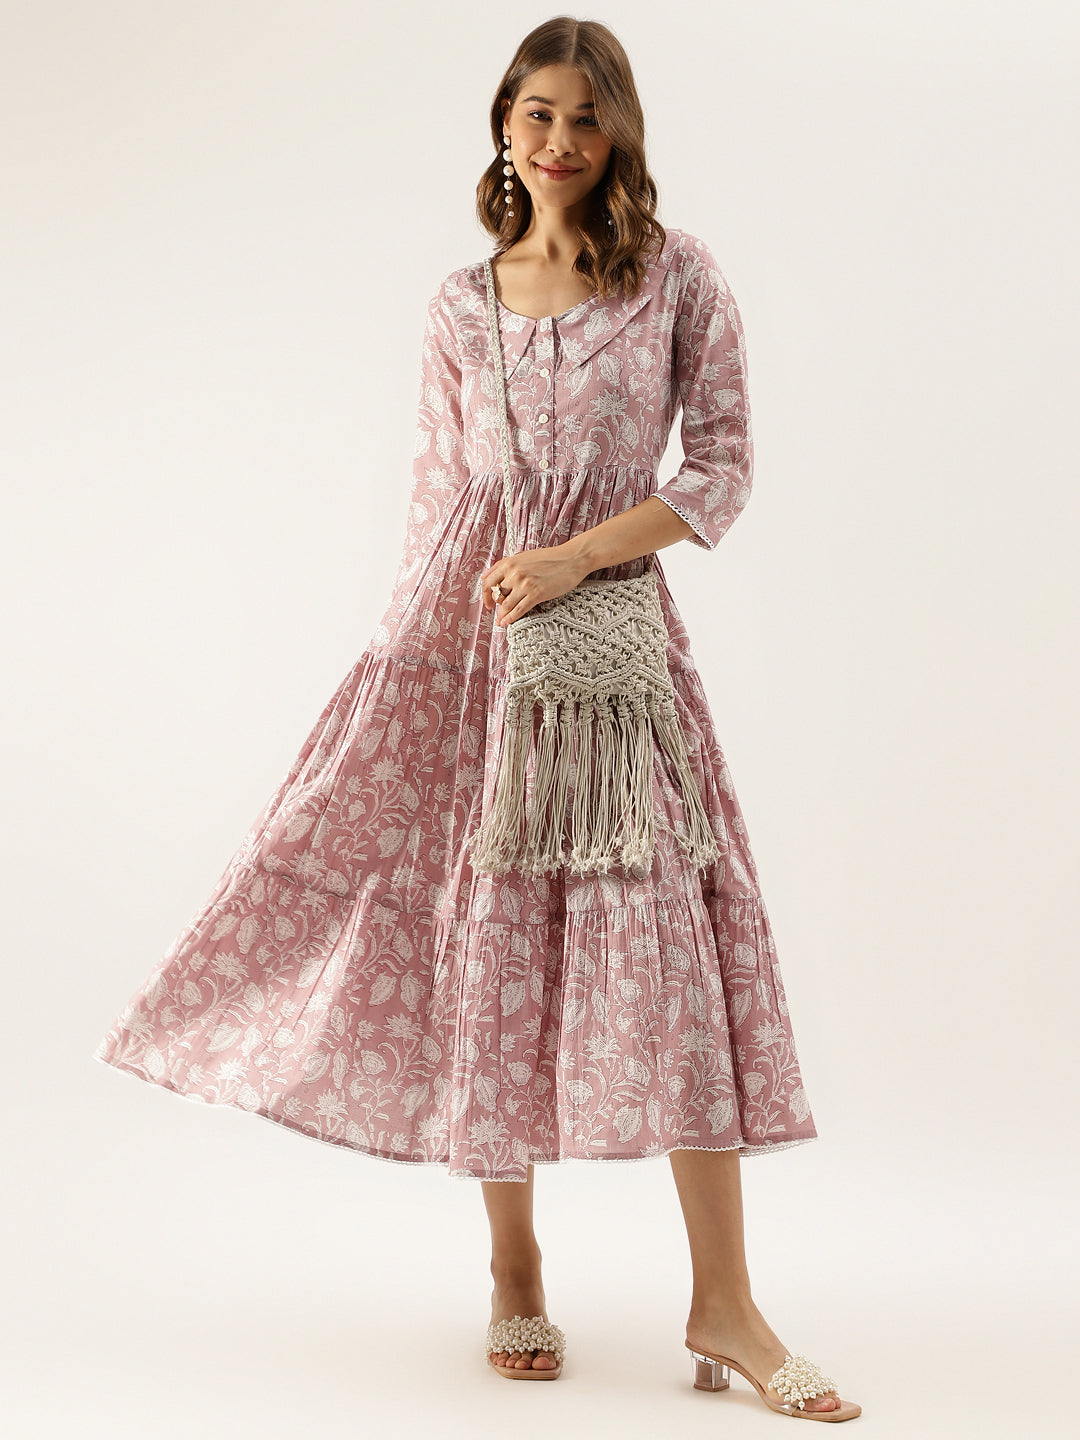 Women's Lavender Floral Printed Cotton Ethnic Dress - Noz2Toz